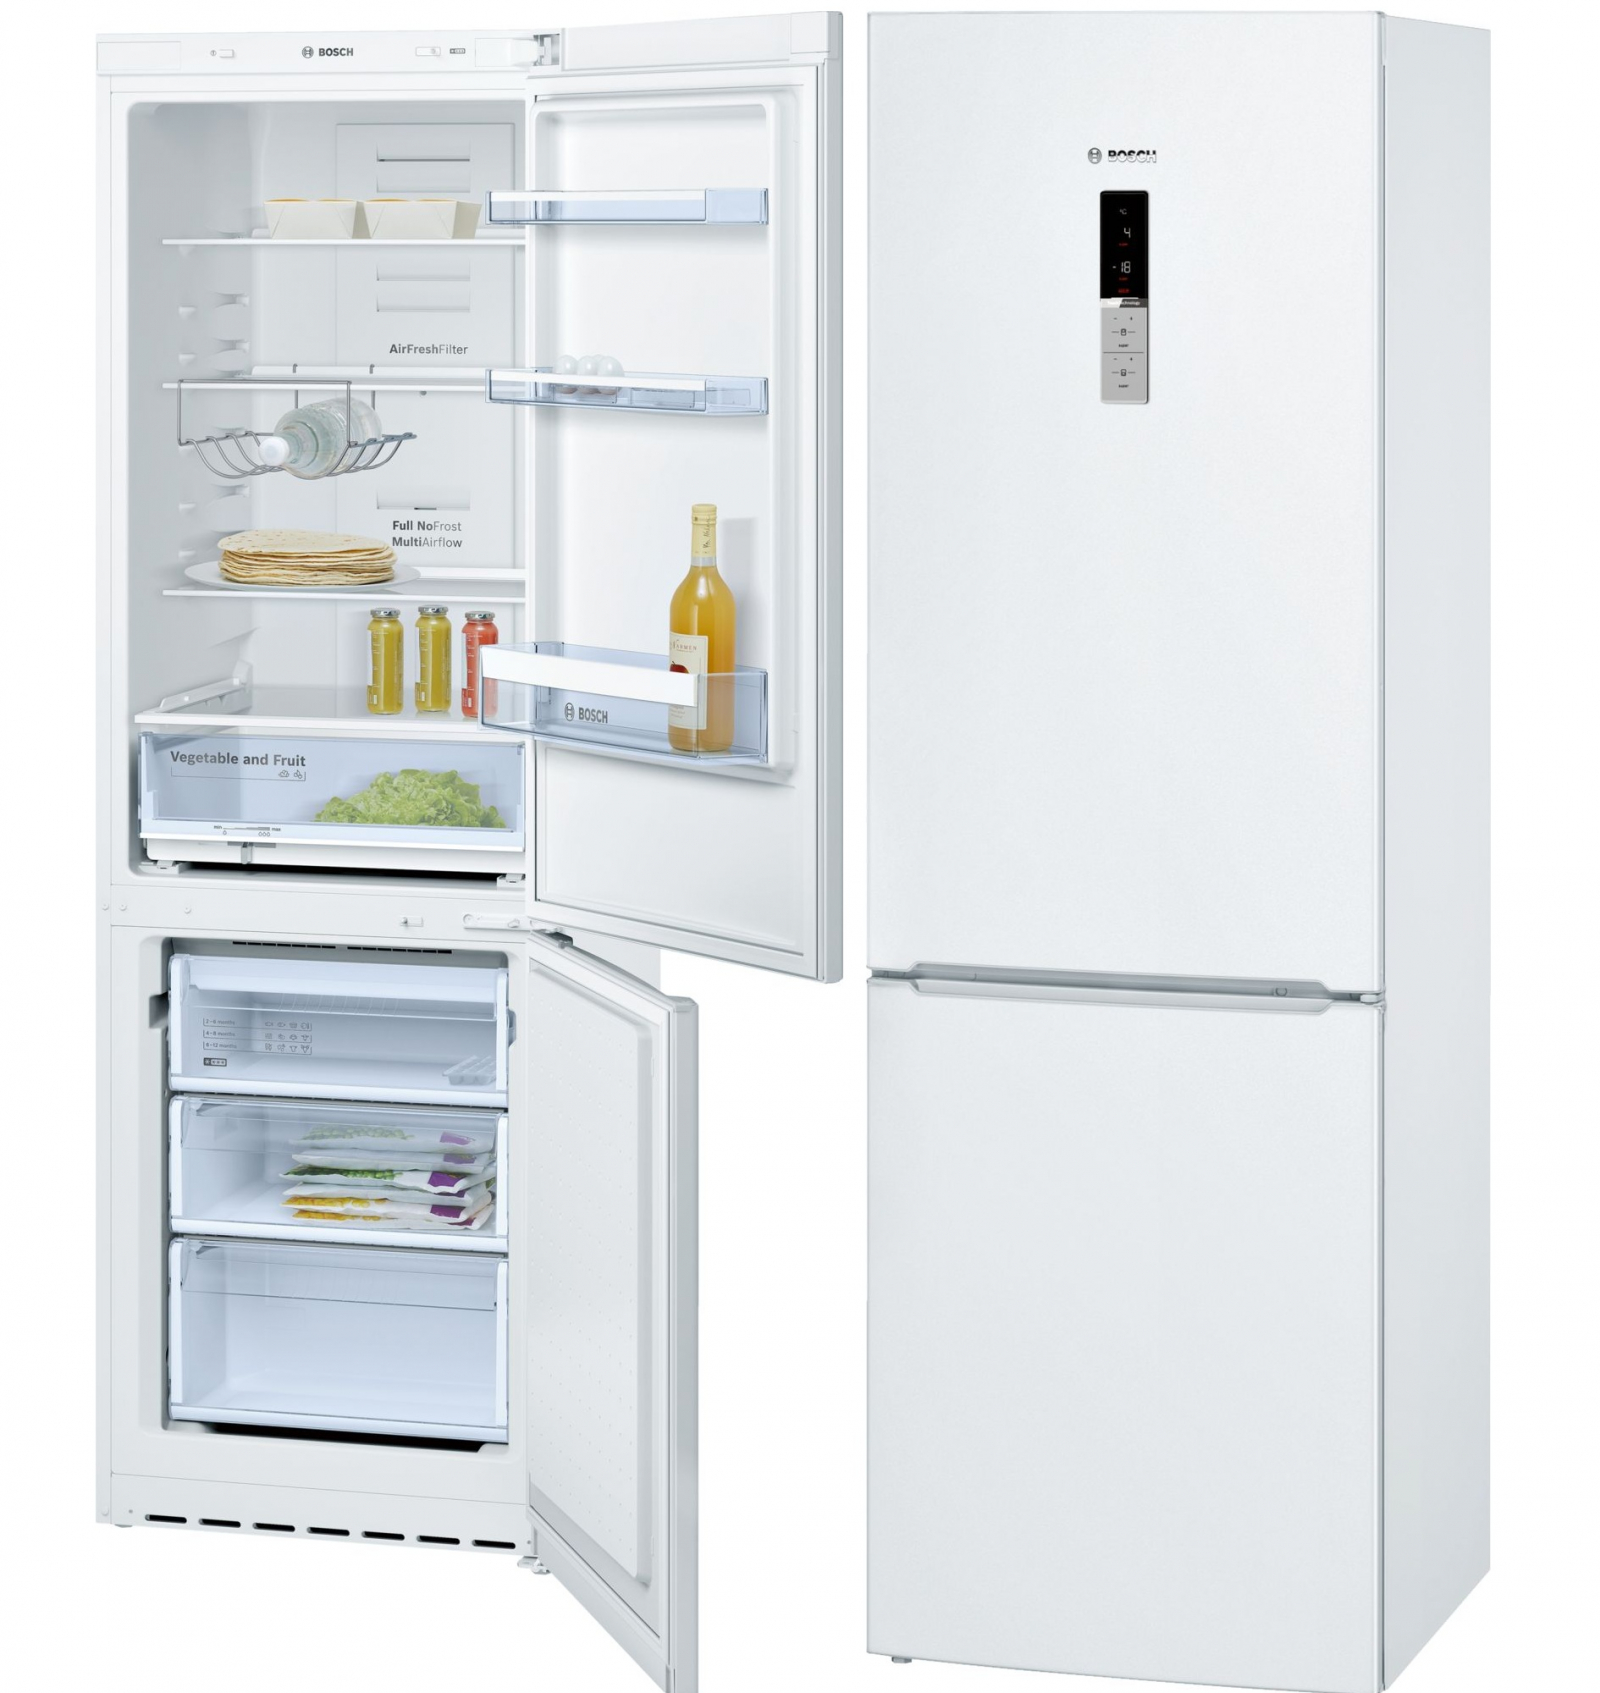 холодильник bosch kgn36vw15r, купить в Красноярске холодильник bosch kgn36vw15r,  купить в Красноярске дешево холодильник bosch kgn36vw15r, купить в Красноярске минимальной цене холодильник bosch kgn36vw15r